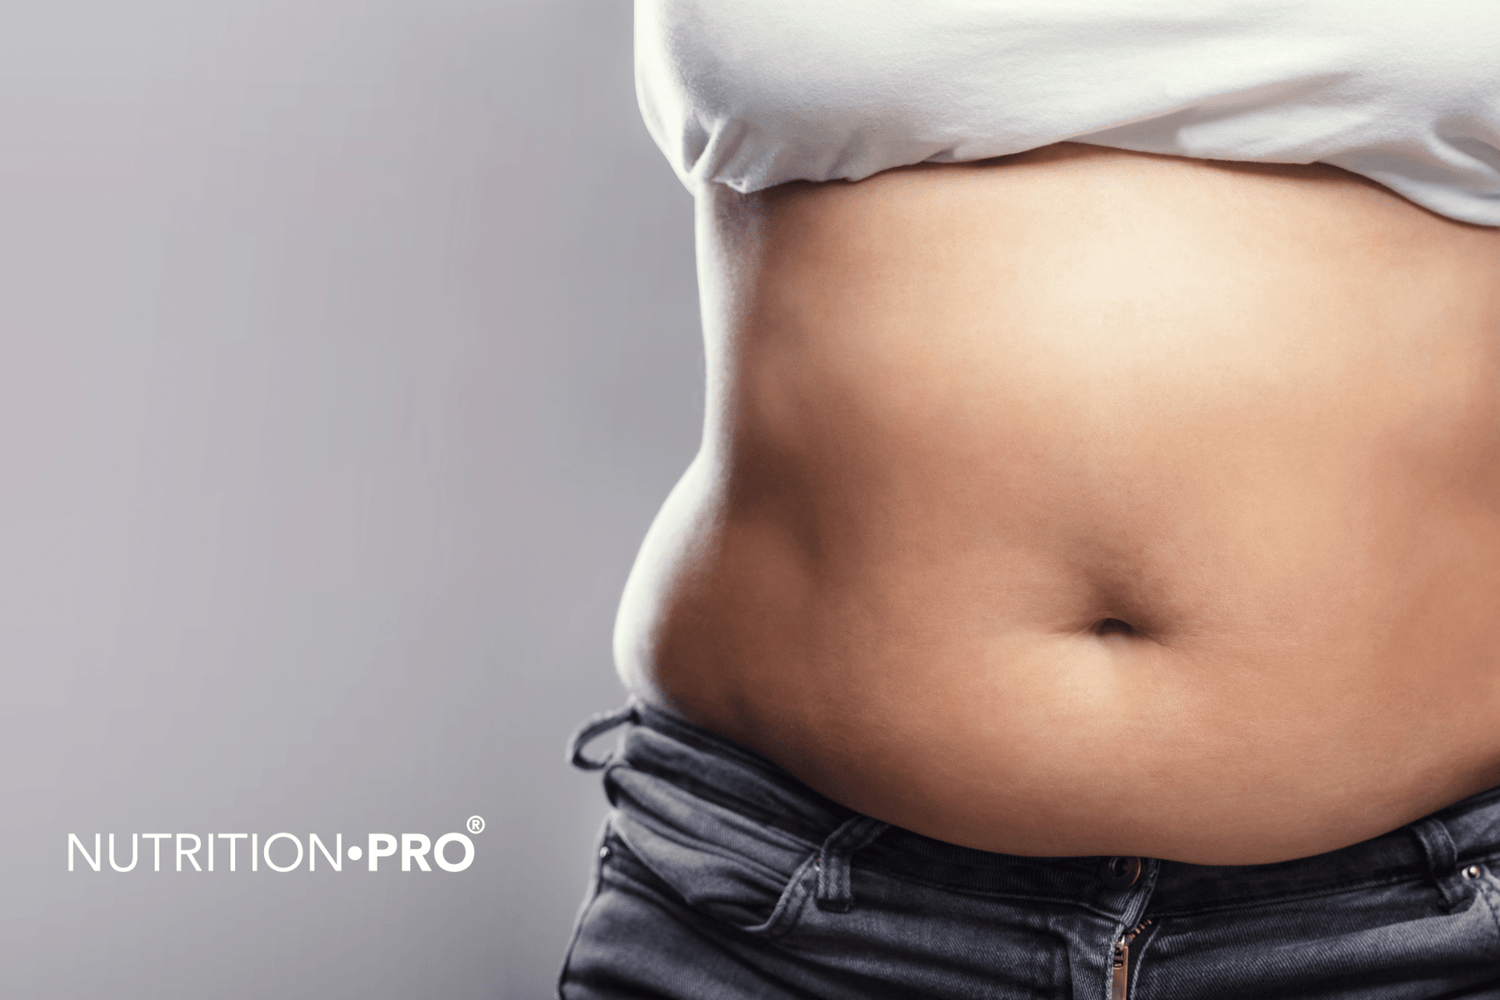 Comment perdre de la graisse abdominale pour les femmes